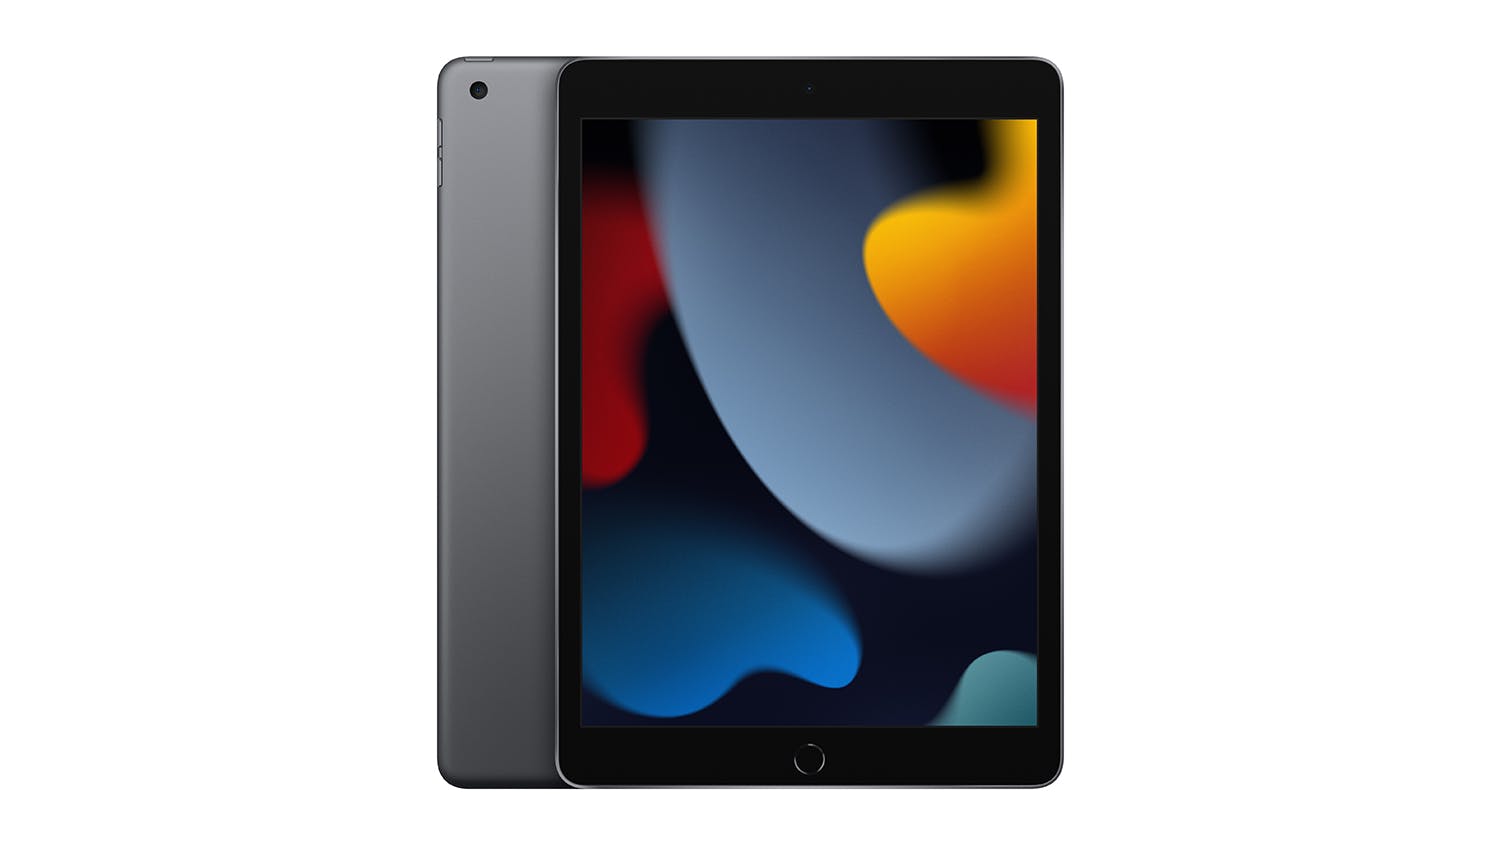 2021 Apple 11-inch iPad Pro (Wi-Fi, 256GB) - Space Gray (Renewed)